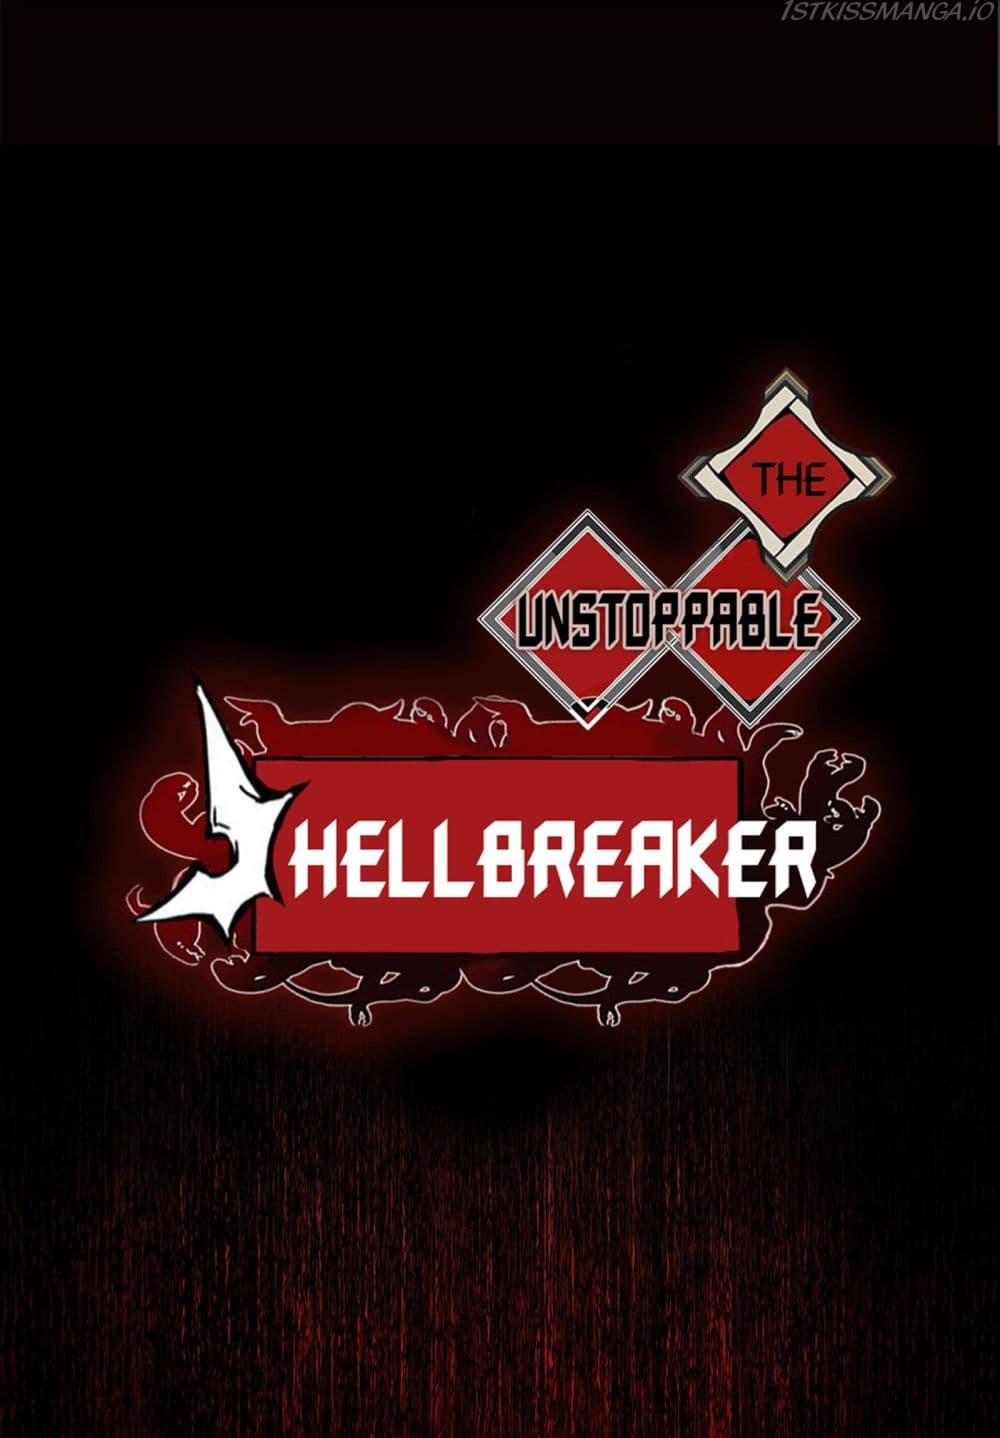 The Unstoppable Hellbreaker 27 02